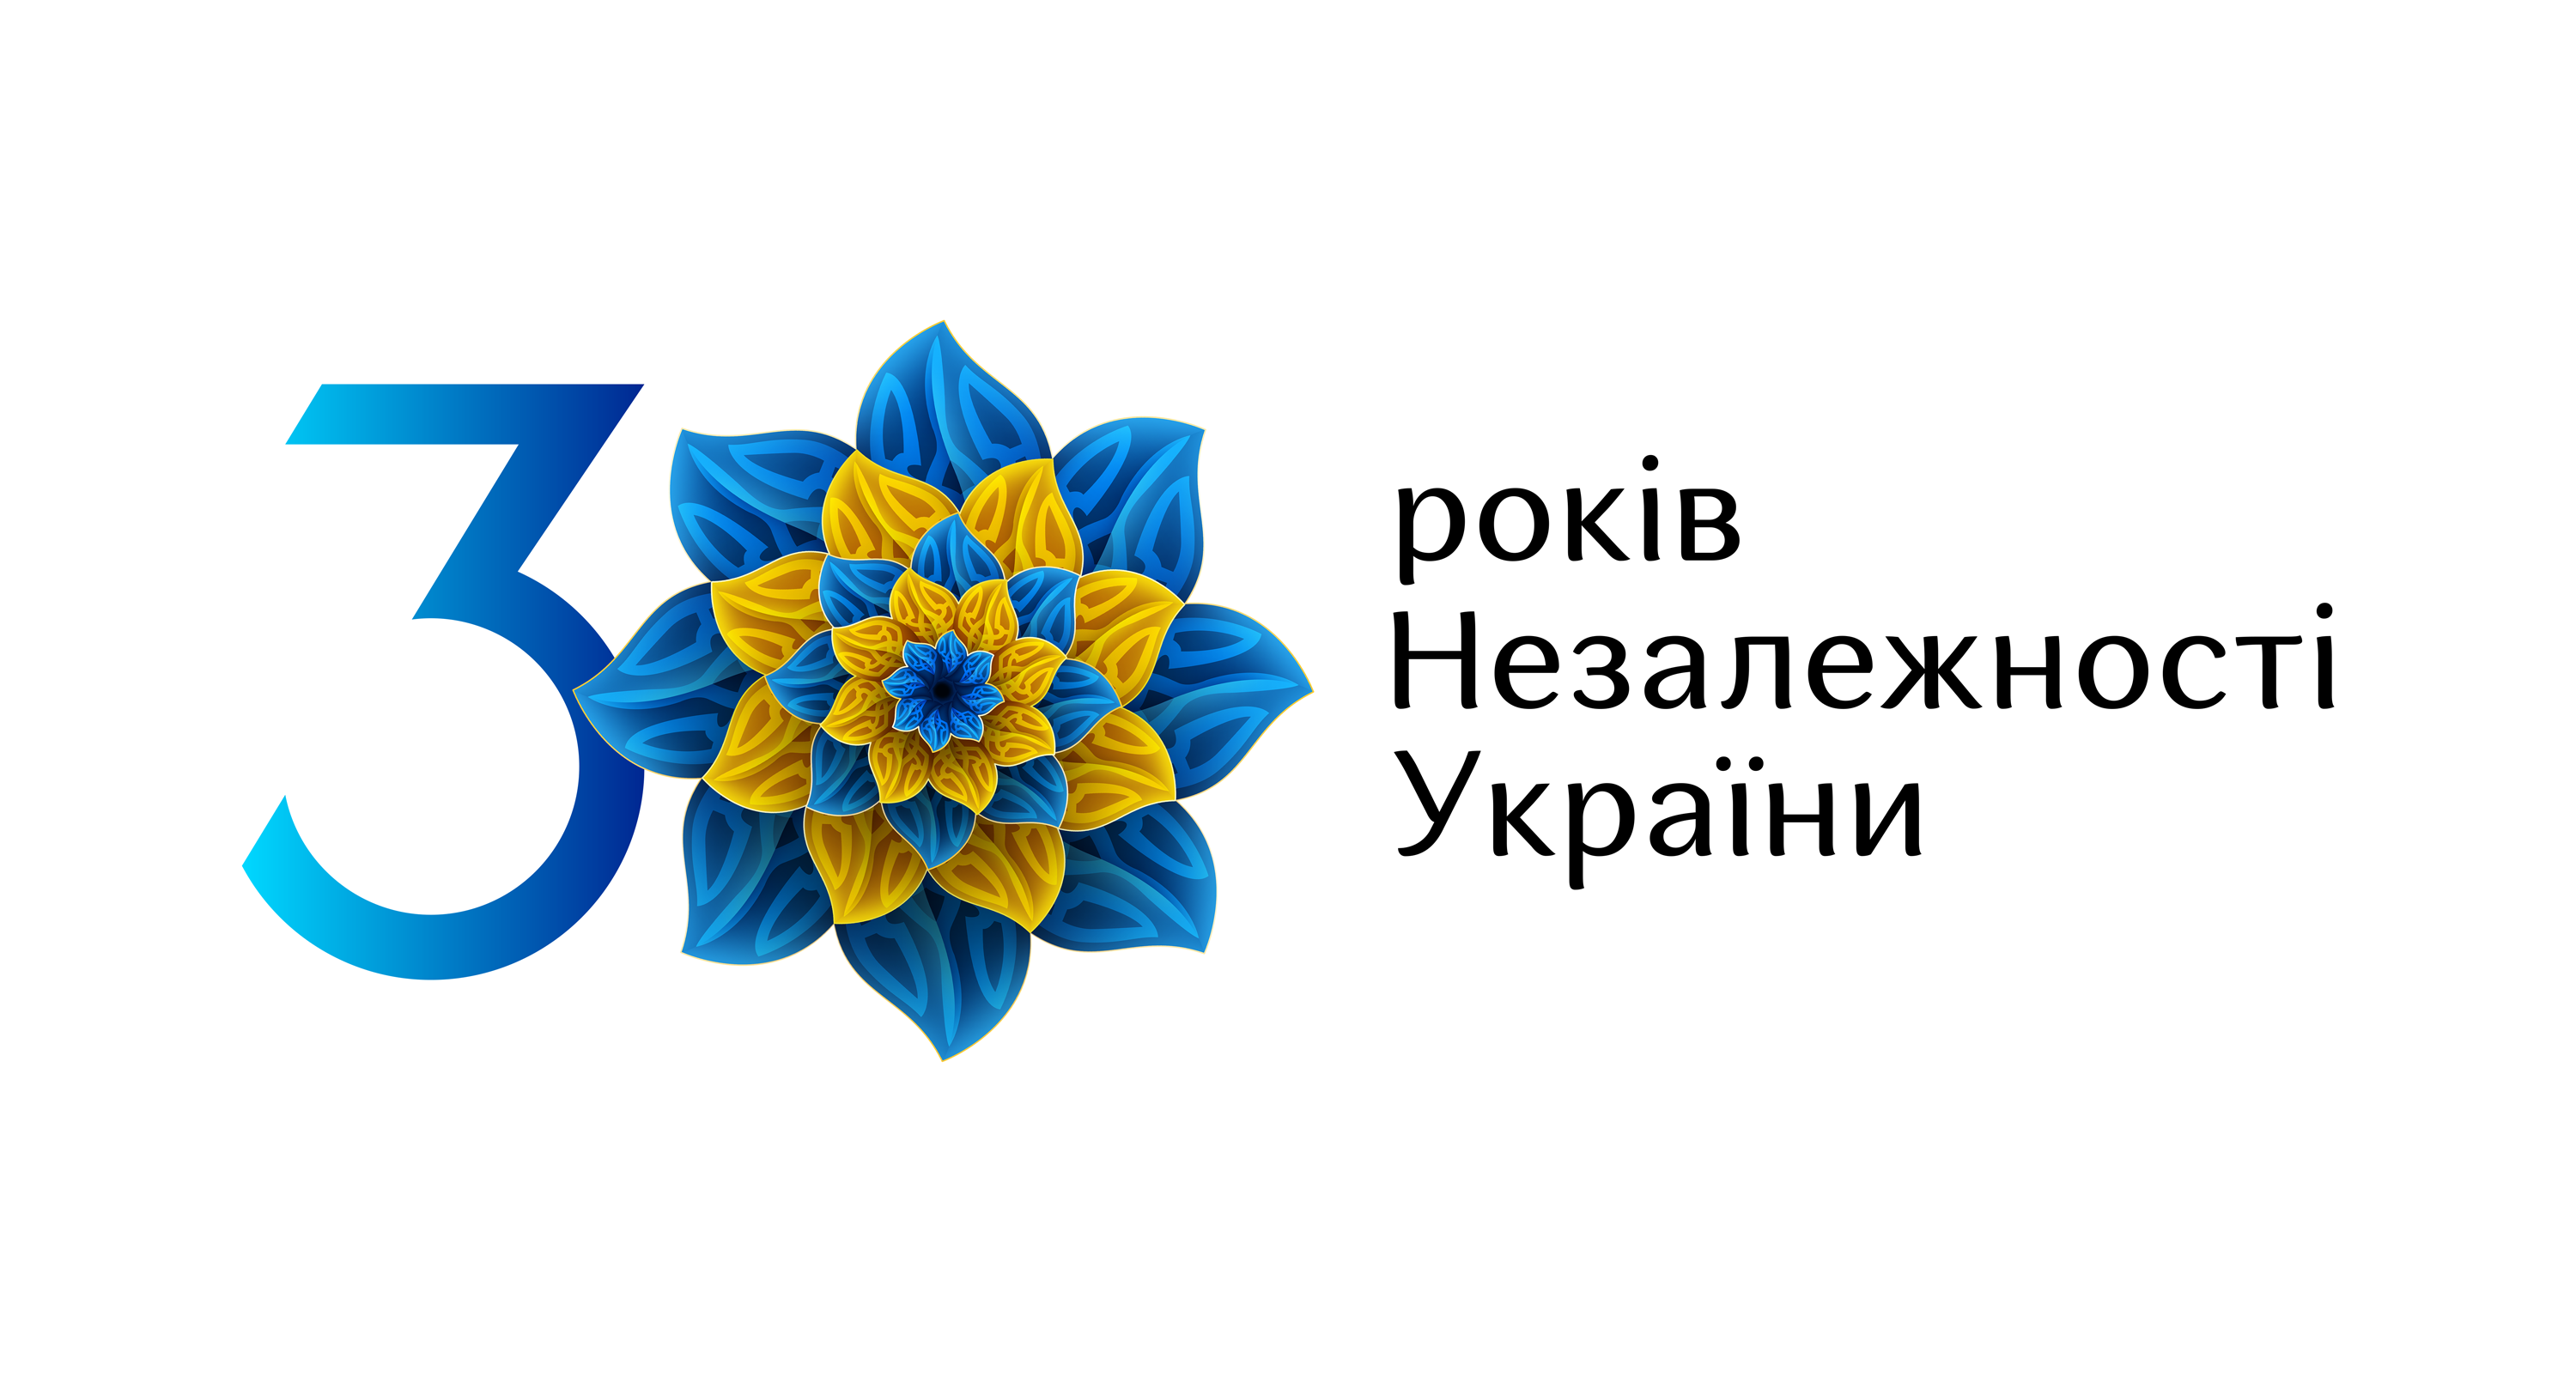 Відеоролик до 30-ї  річниці Незалежності України 